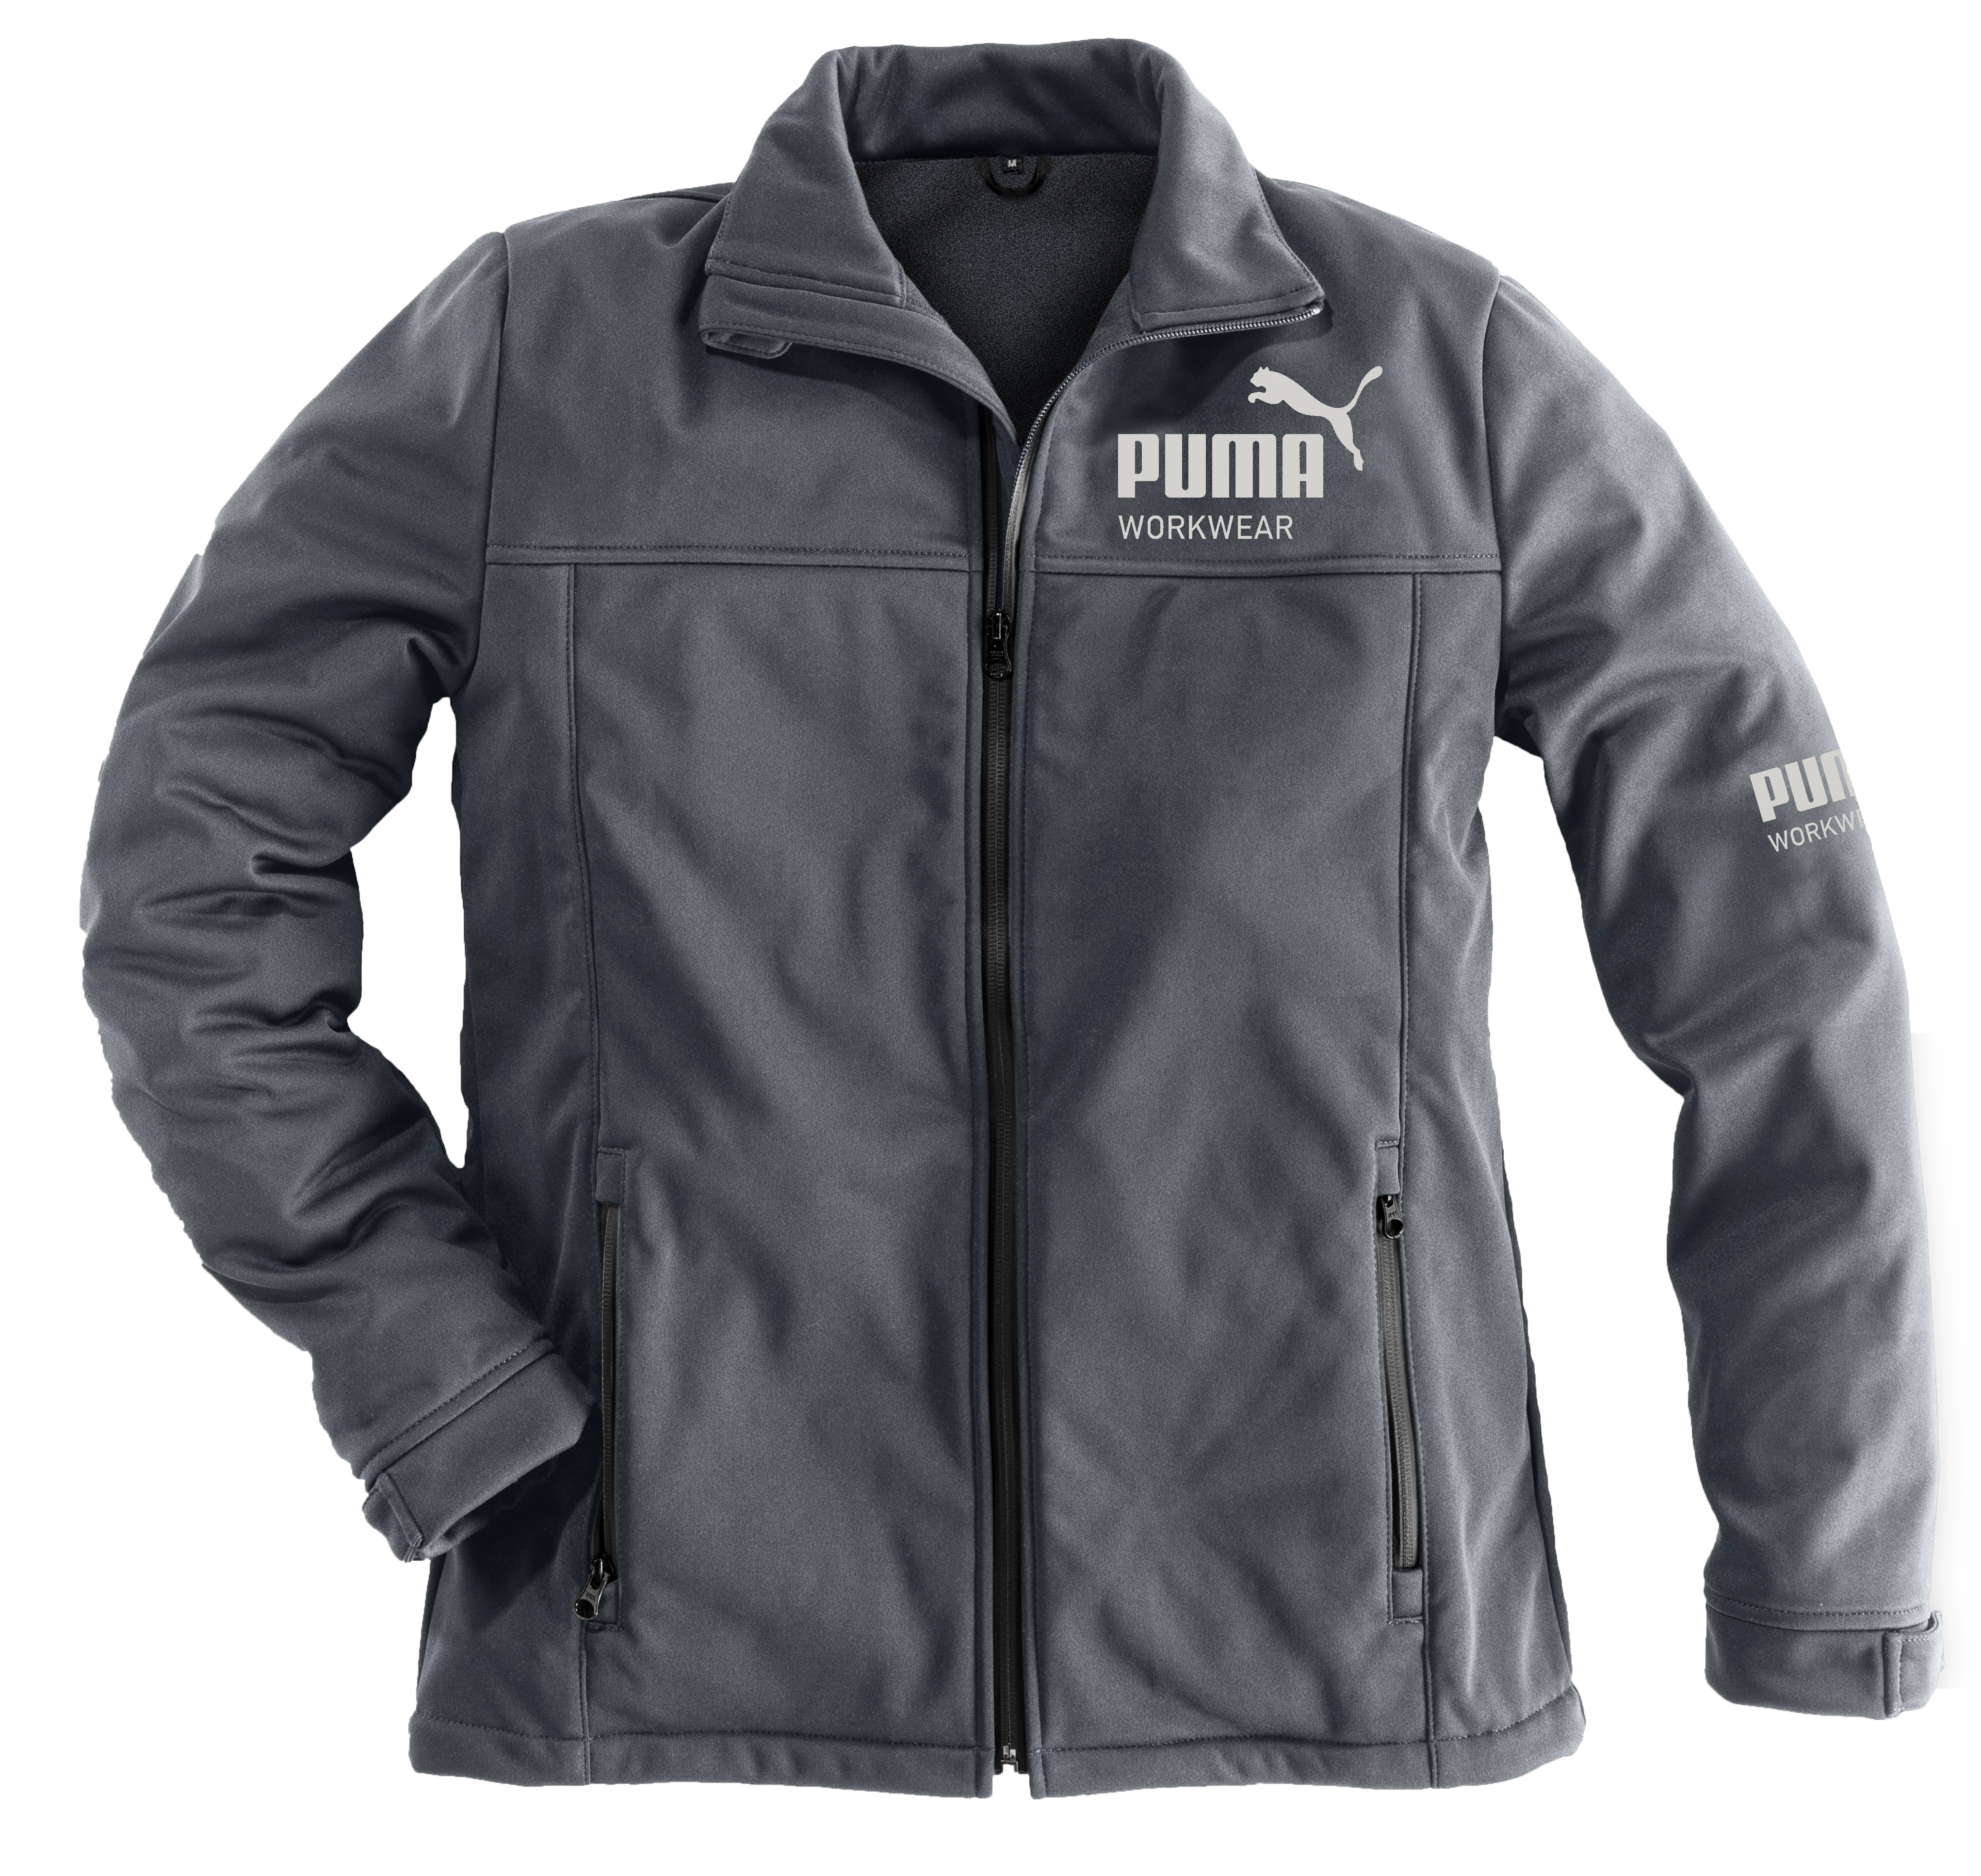 S bei OBI Stahlgrau/Carbon Champ Puma Softshell-Jacke kaufen Größe